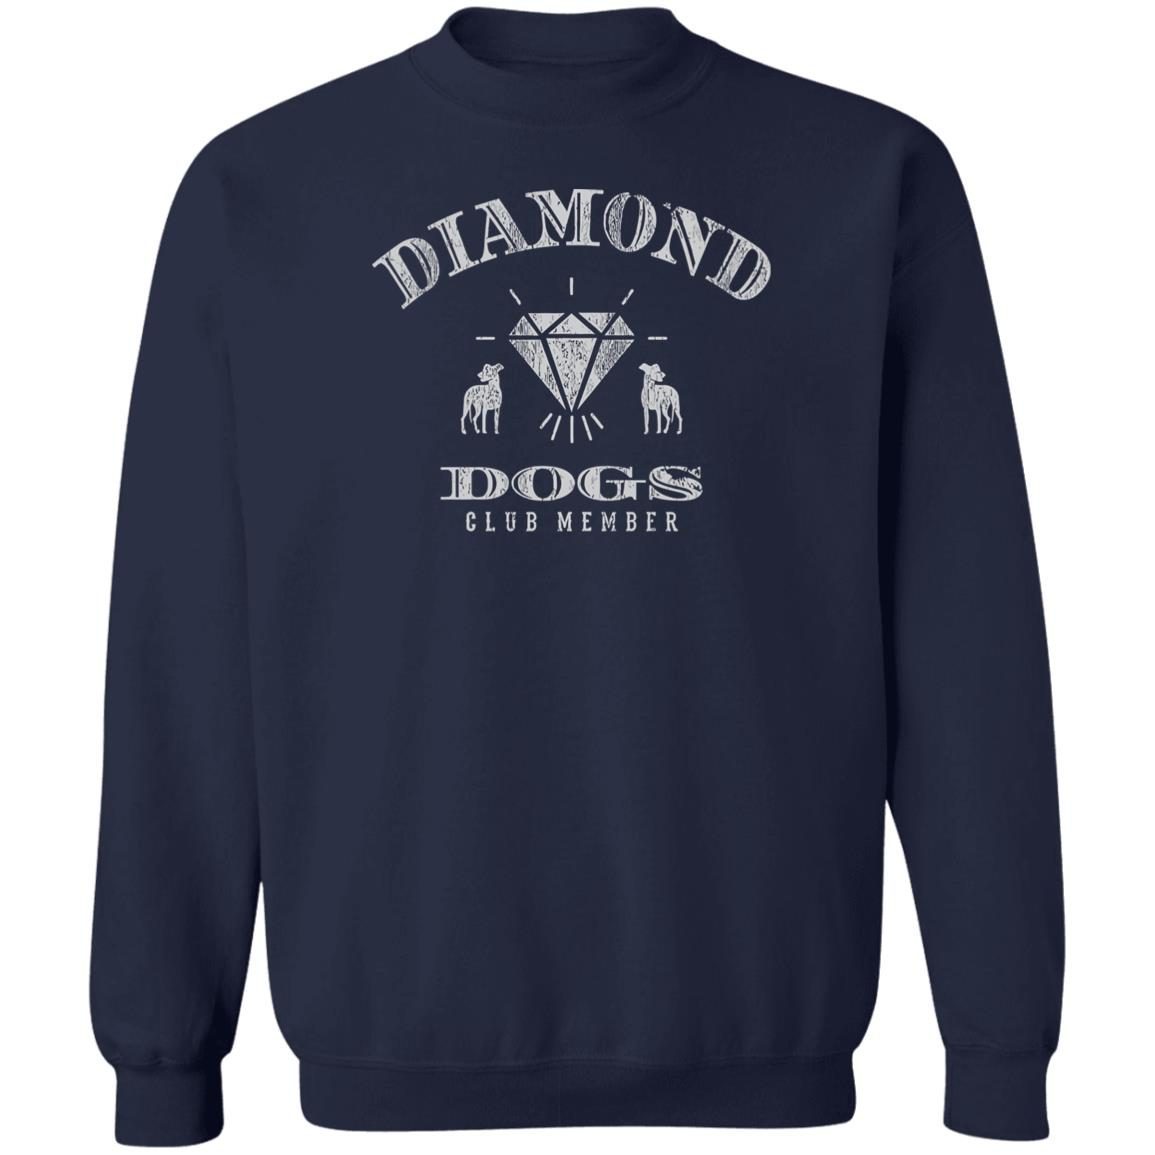 Diamond dogs club member shirt